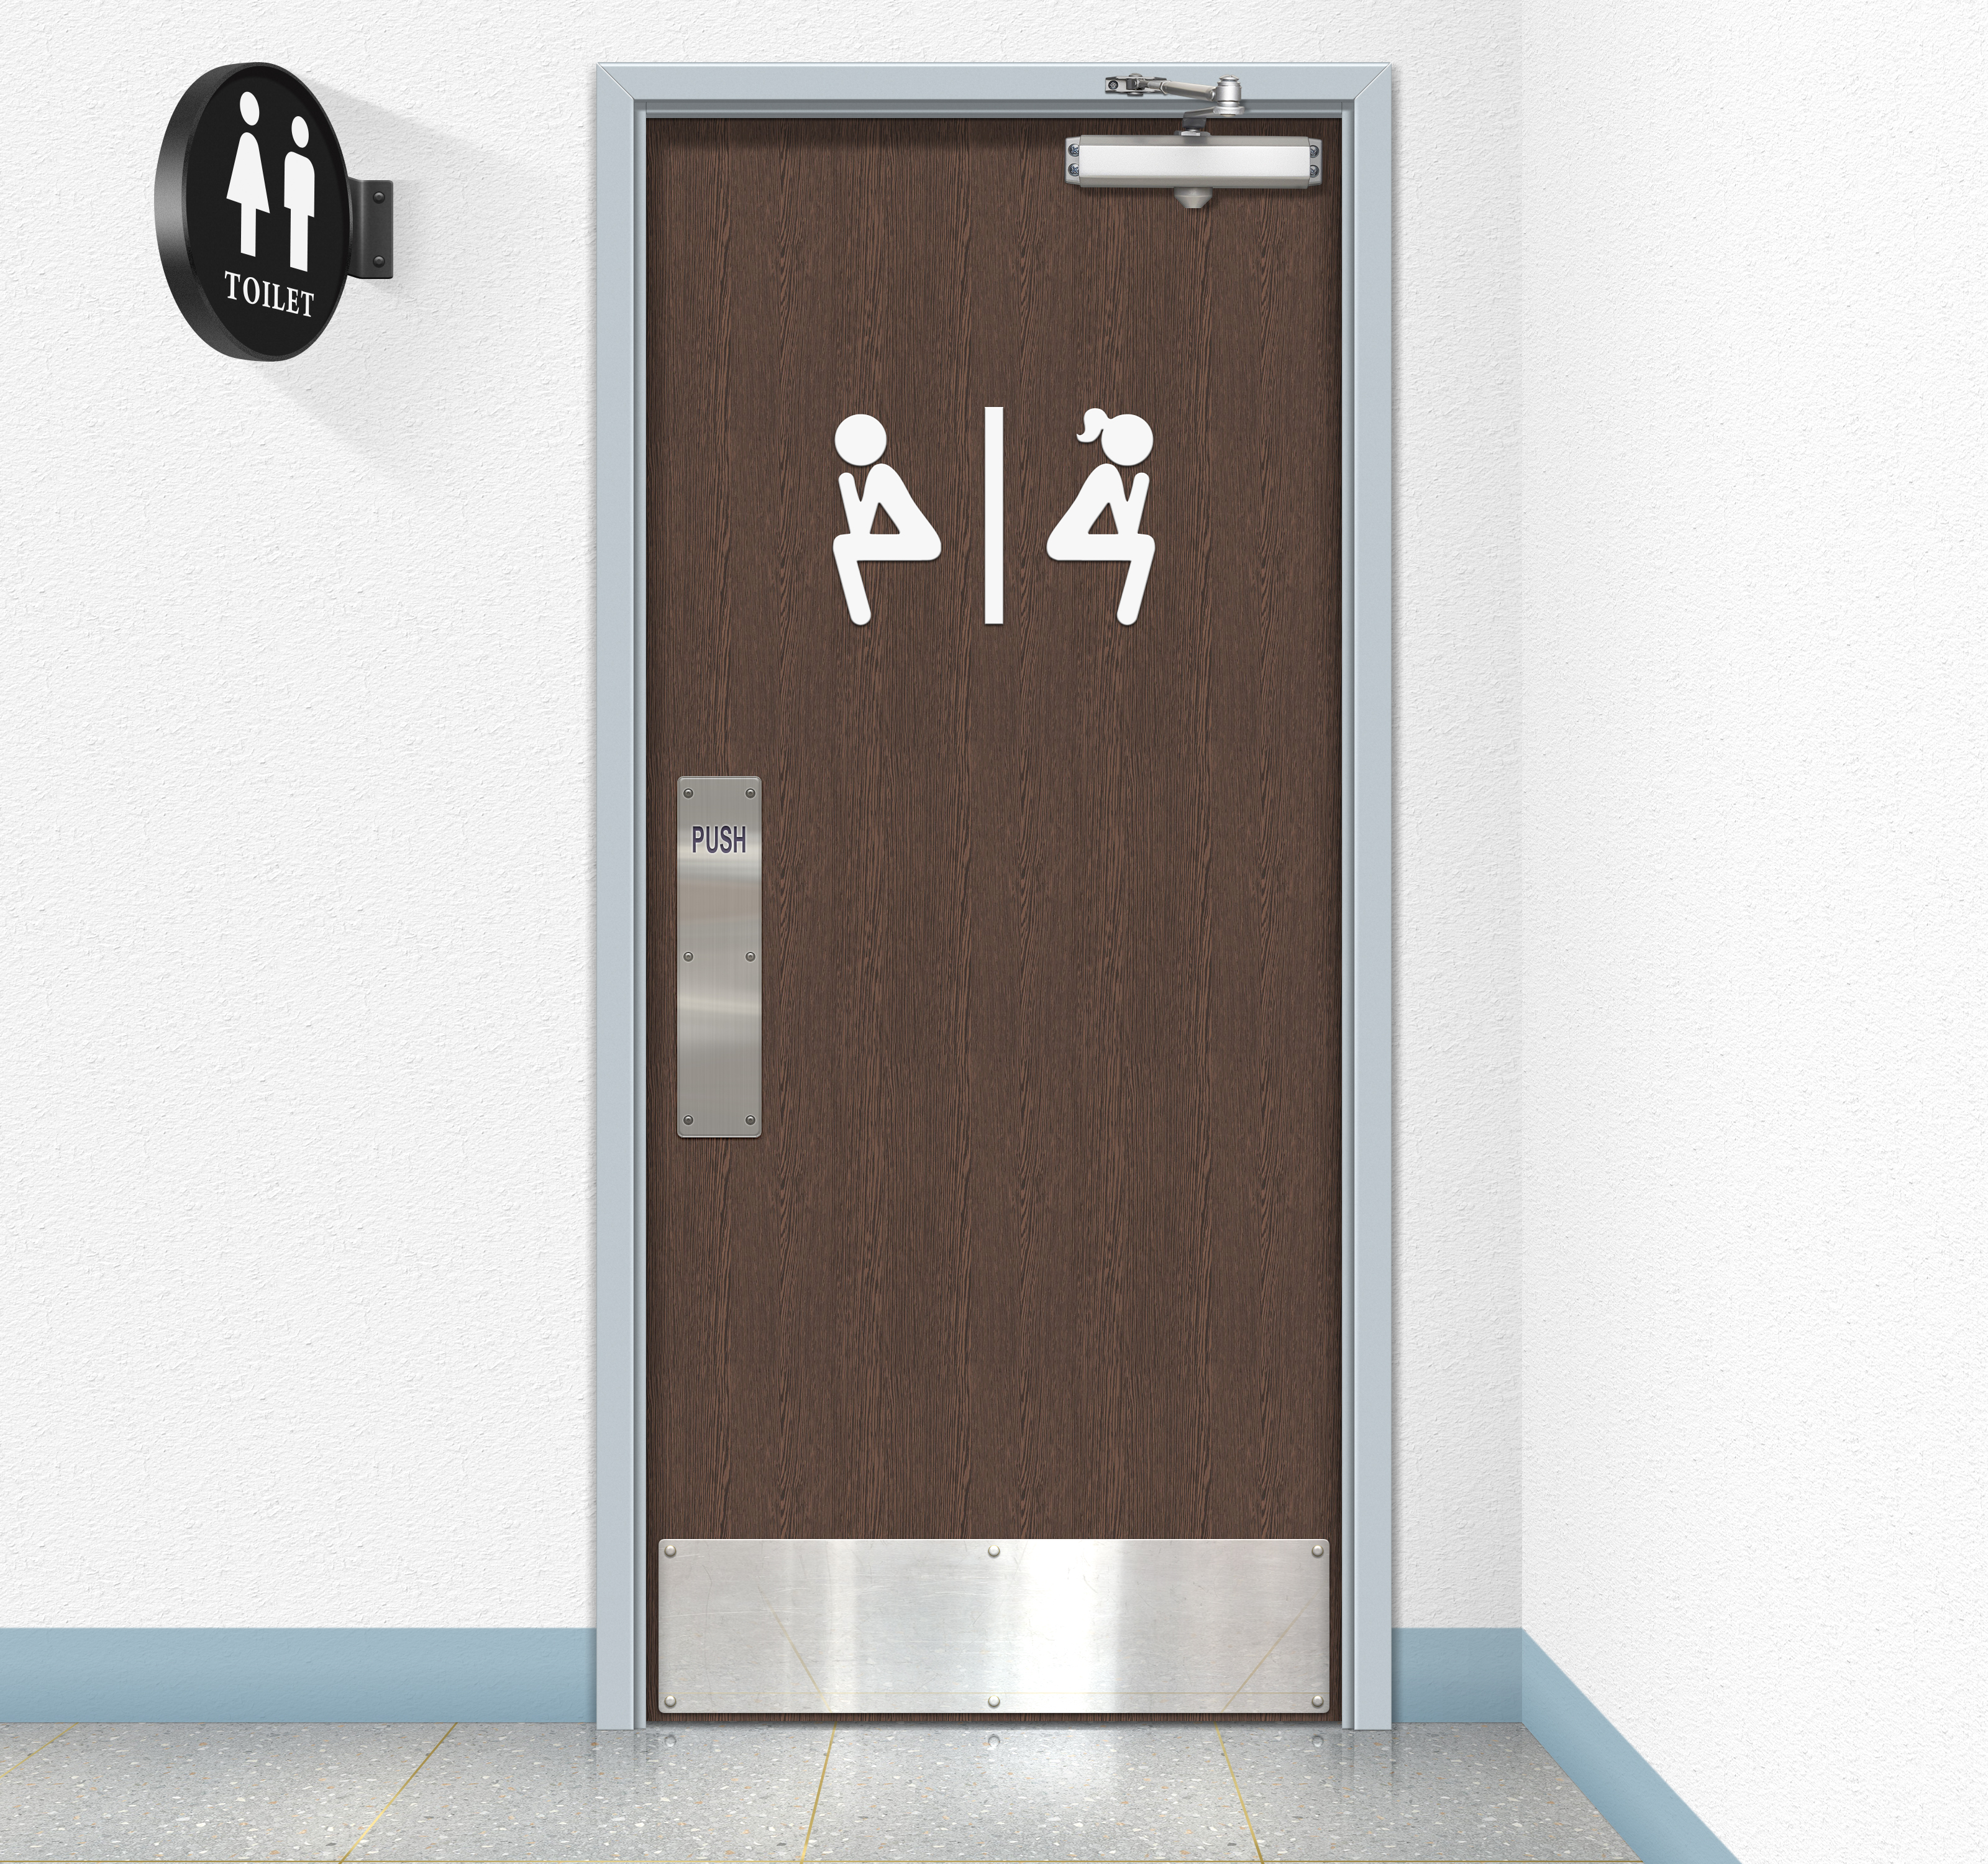 Public Restroom Toilets Humor Sign Door 3200x3000